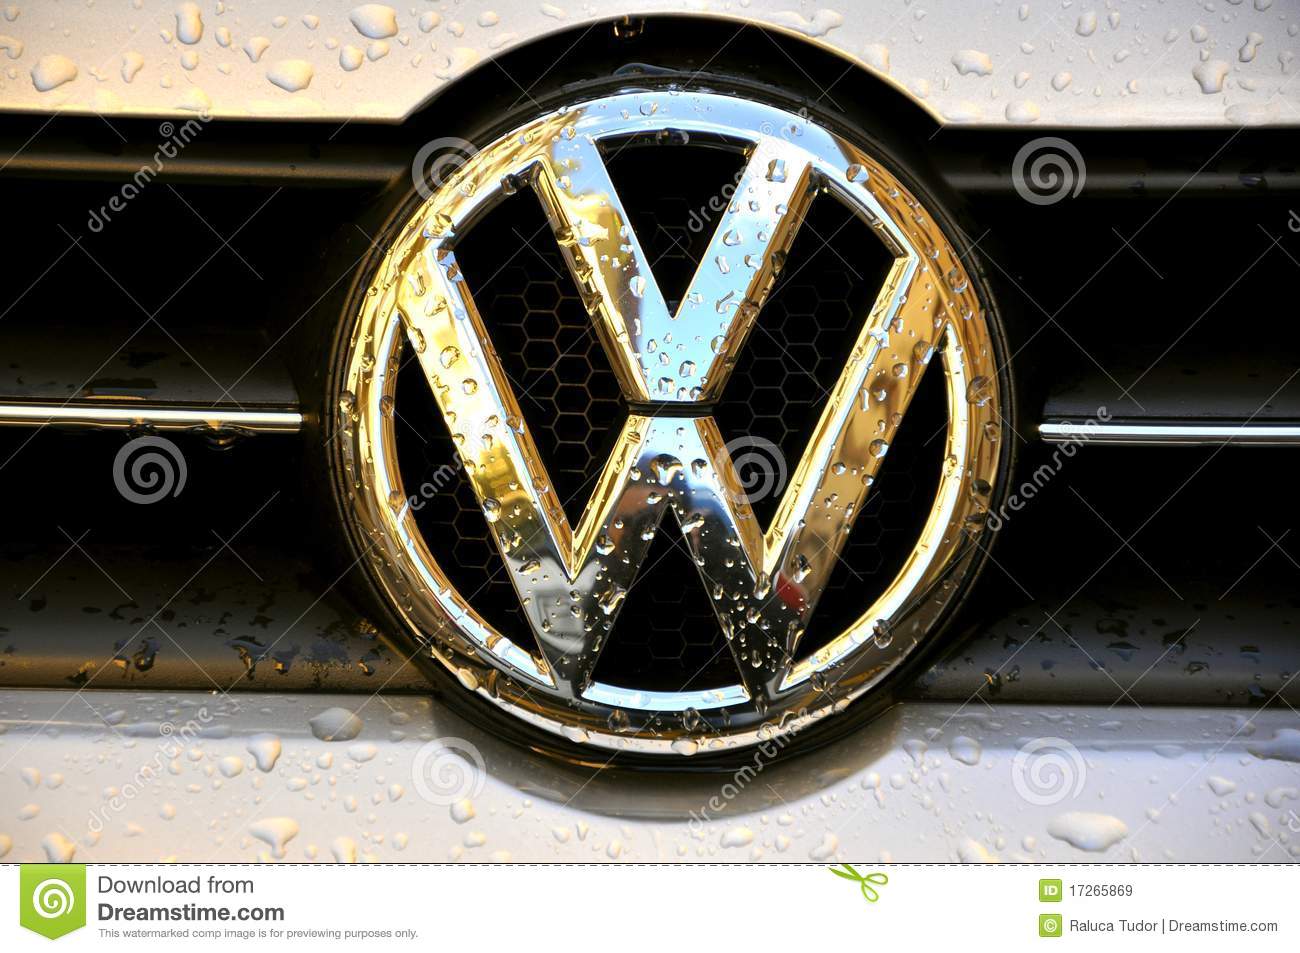 Volkswagen оголосив про мільярдні збитки через скандал з двигуном